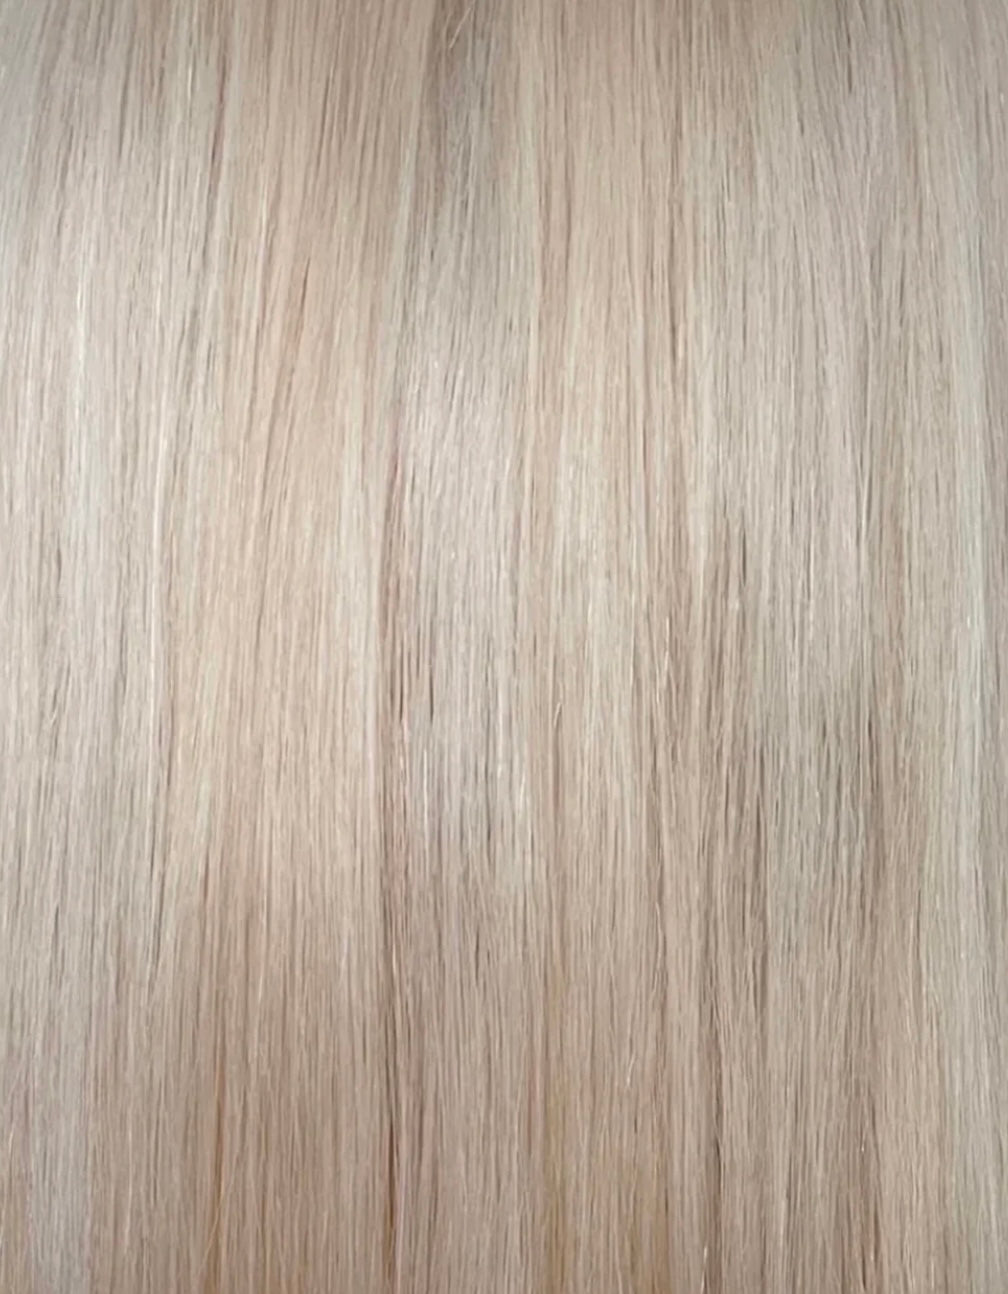 Custom colour - LUXURIOUS HD LACE FRONT wig - 20” European hair - 21.5 cap